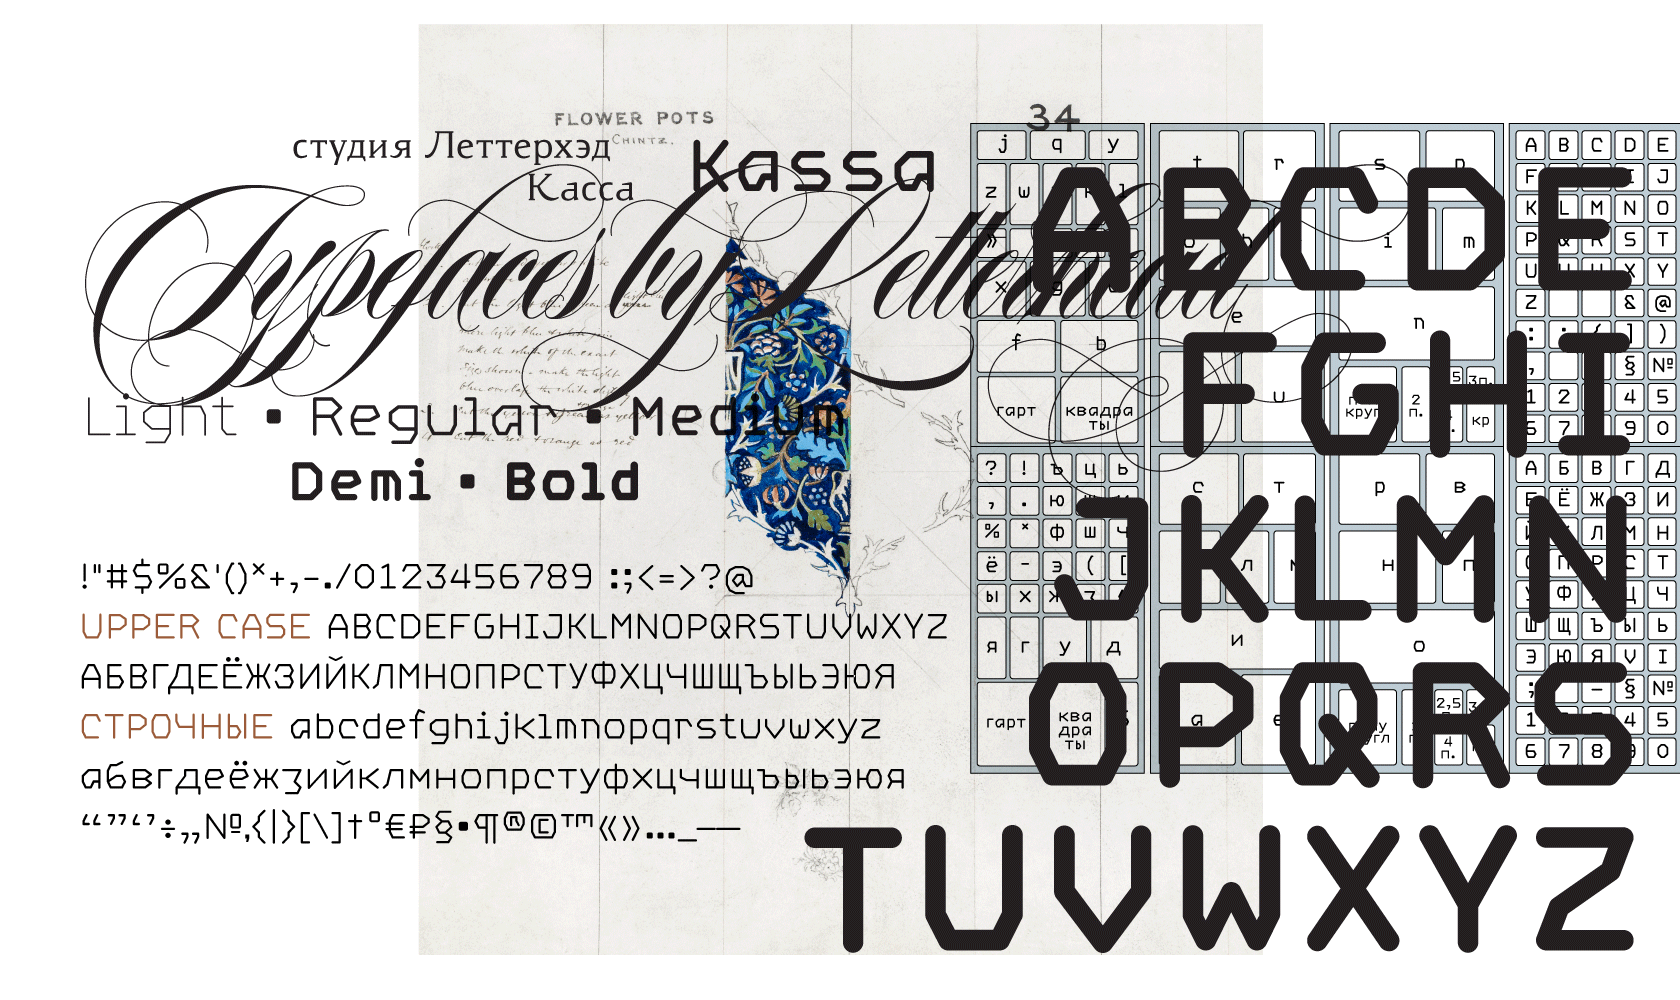 Как сделать красивый русский шрифт в телеграмме фото 63